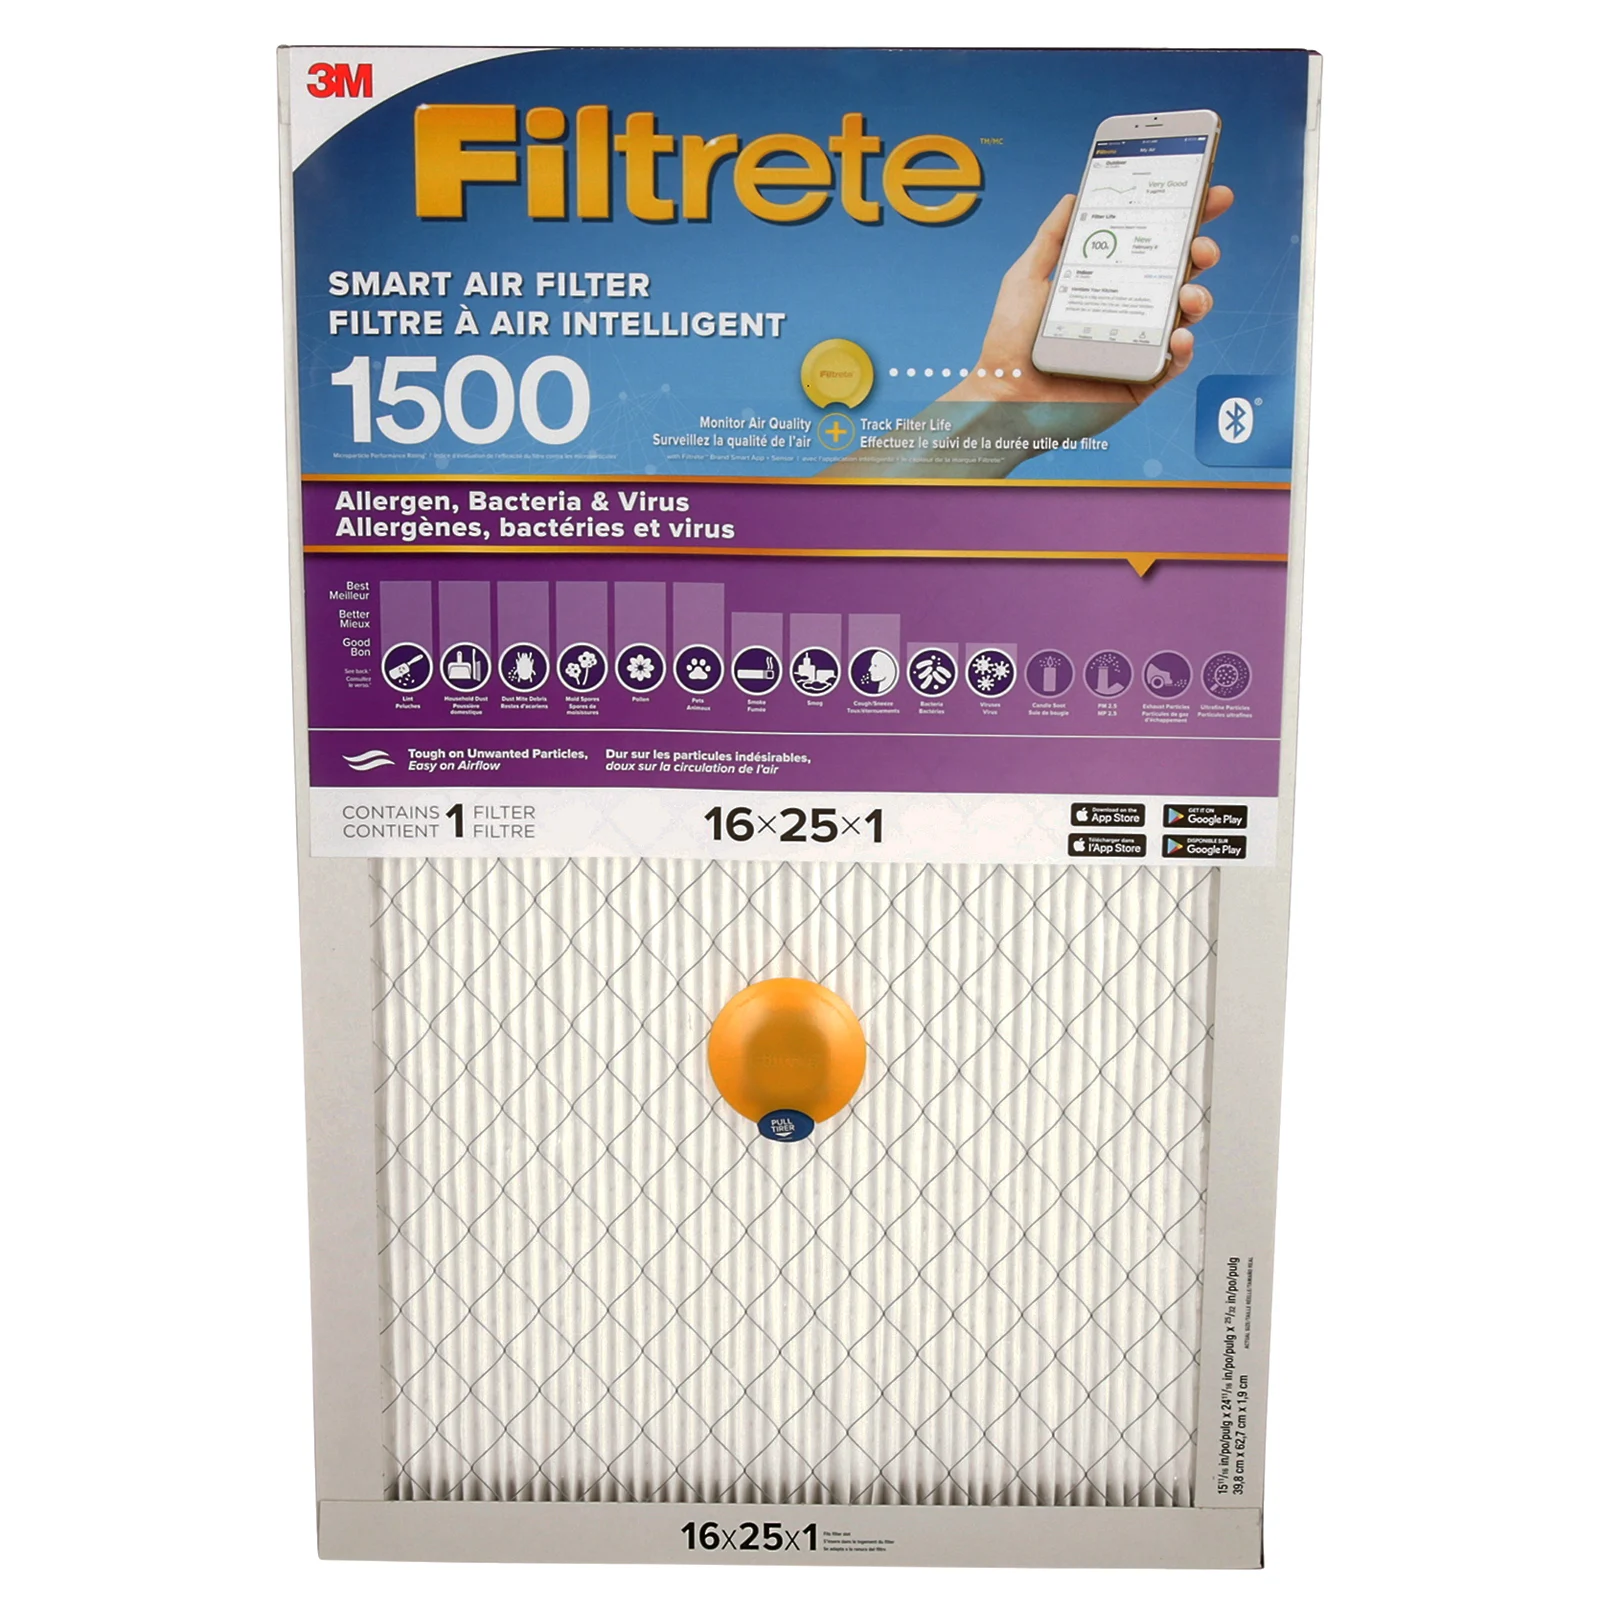 A smart furnace filter